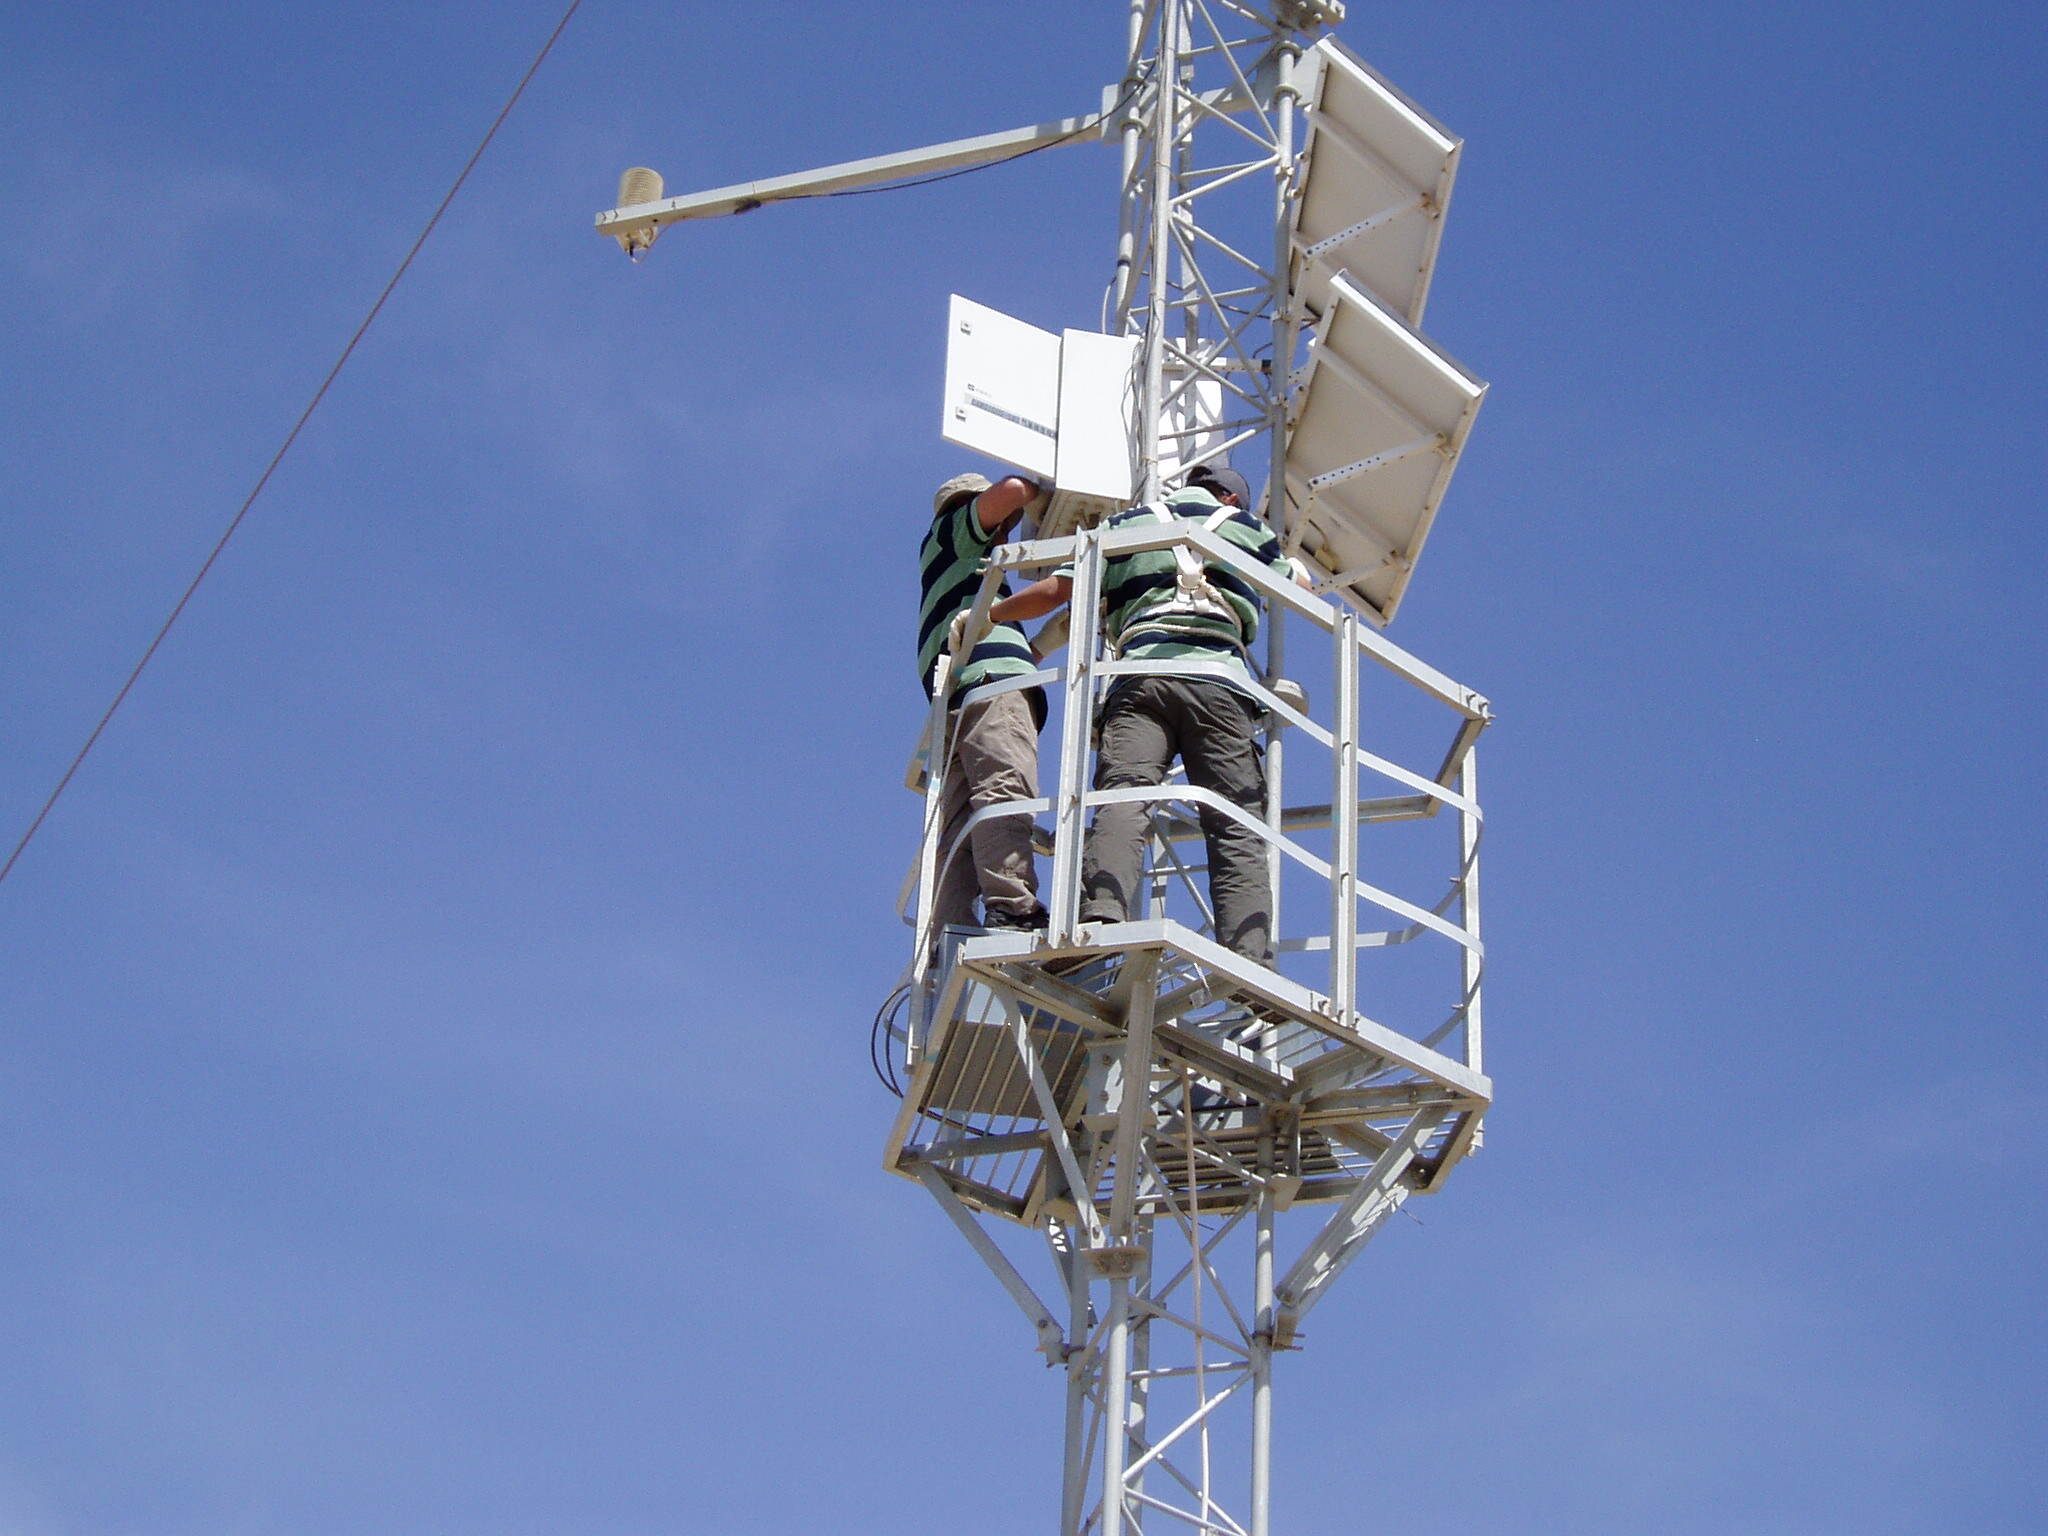 Unxibelelwano Antenna WIFI Telecommunication Guyed Wire Tower iinkcukacha